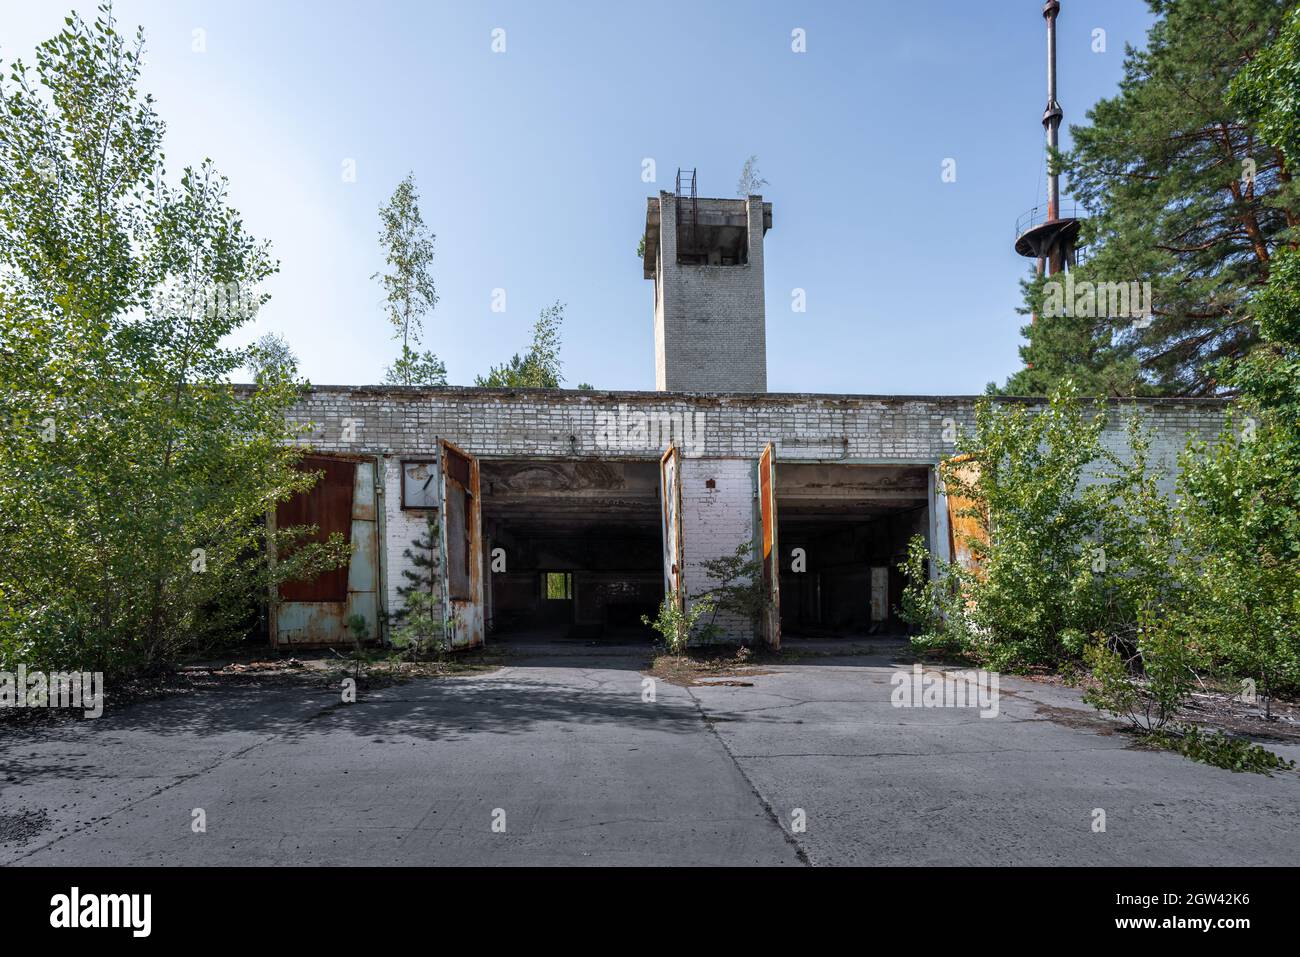 Caserne de pompiers - Pripyat, zone d'exclusion de Tchernobyl, Ukraine Banque D'Images